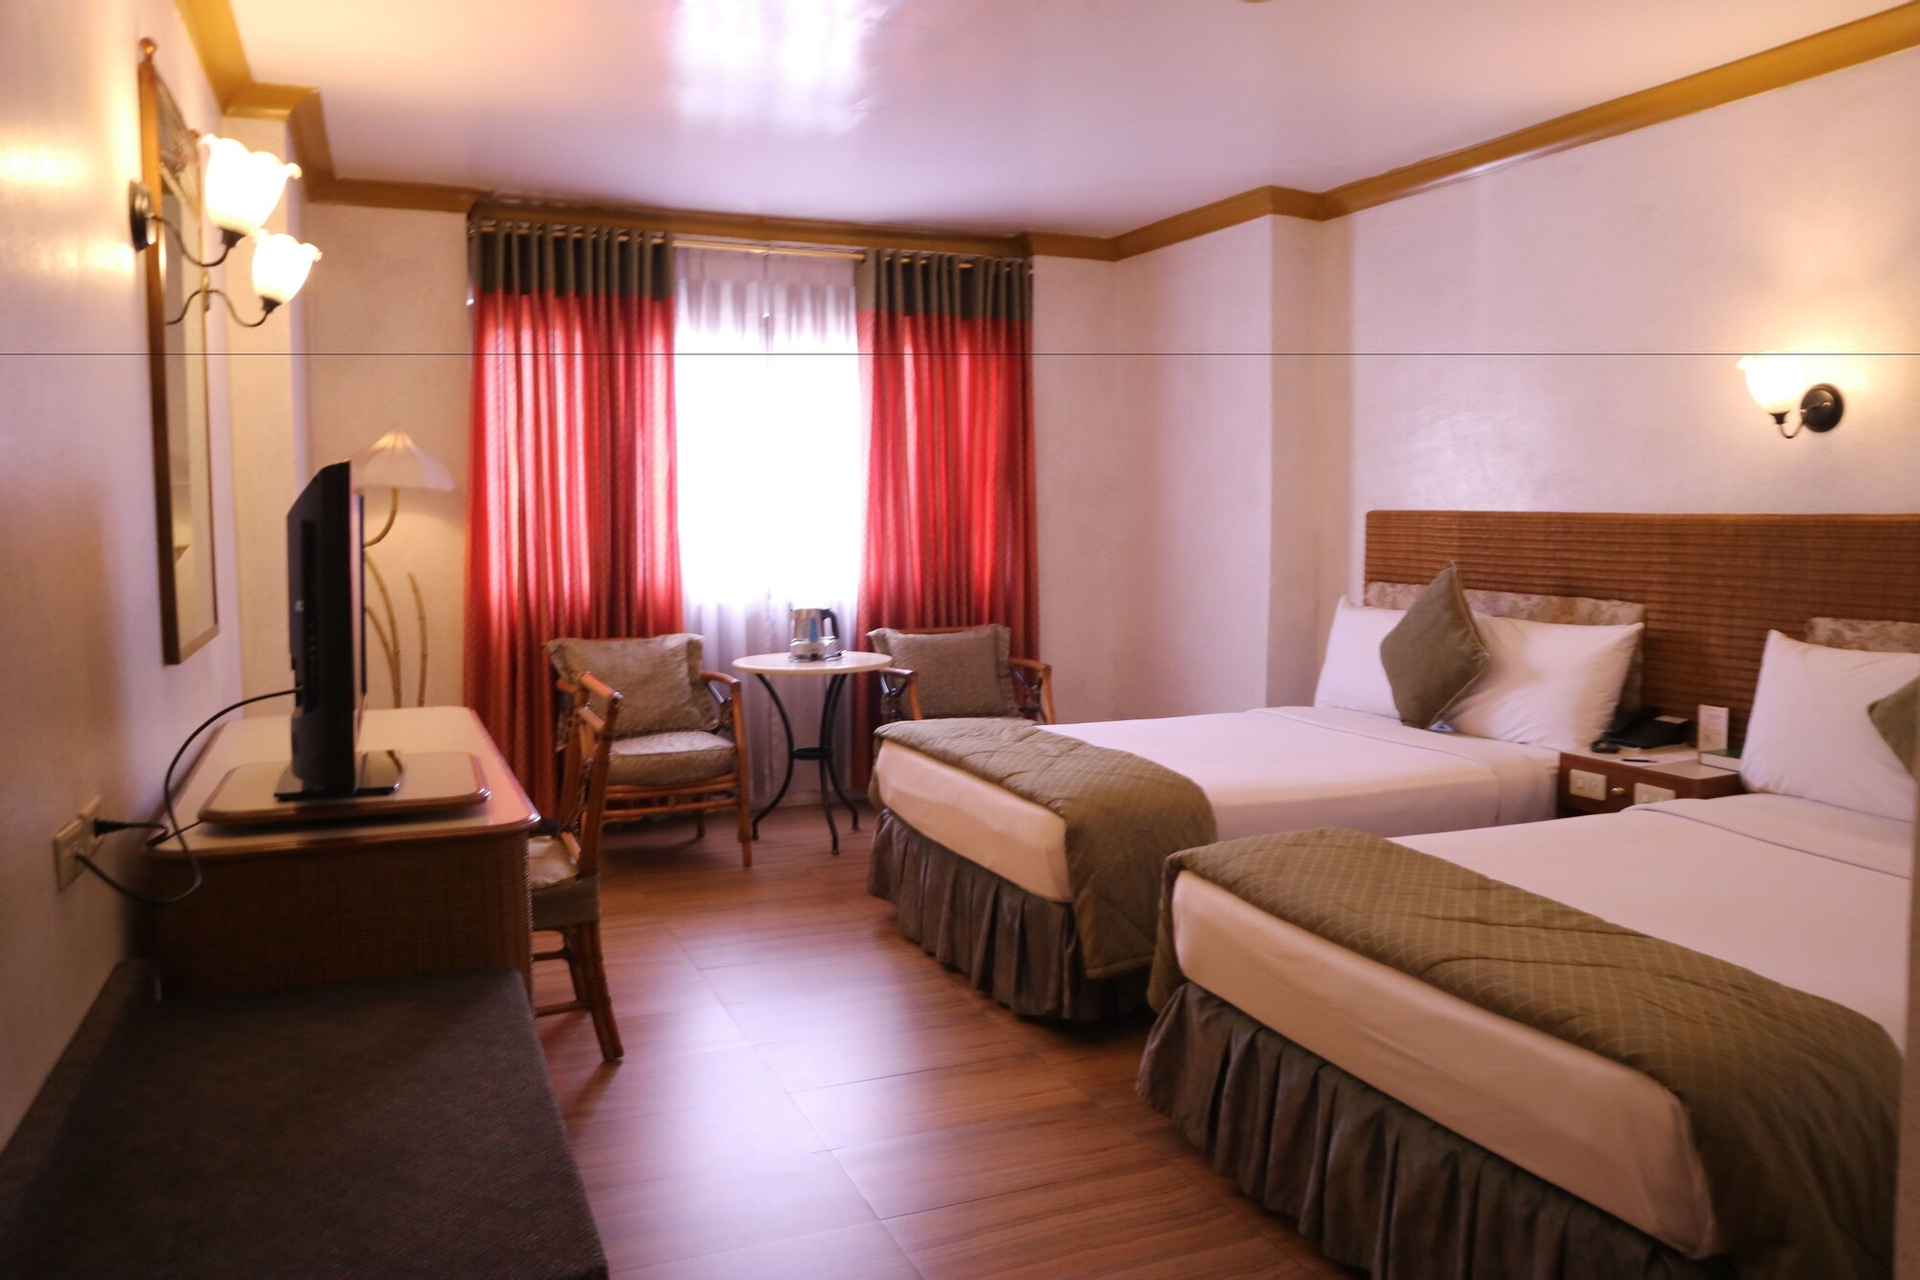 Bedroom 1, Golden Pine Hotel, Baguio City